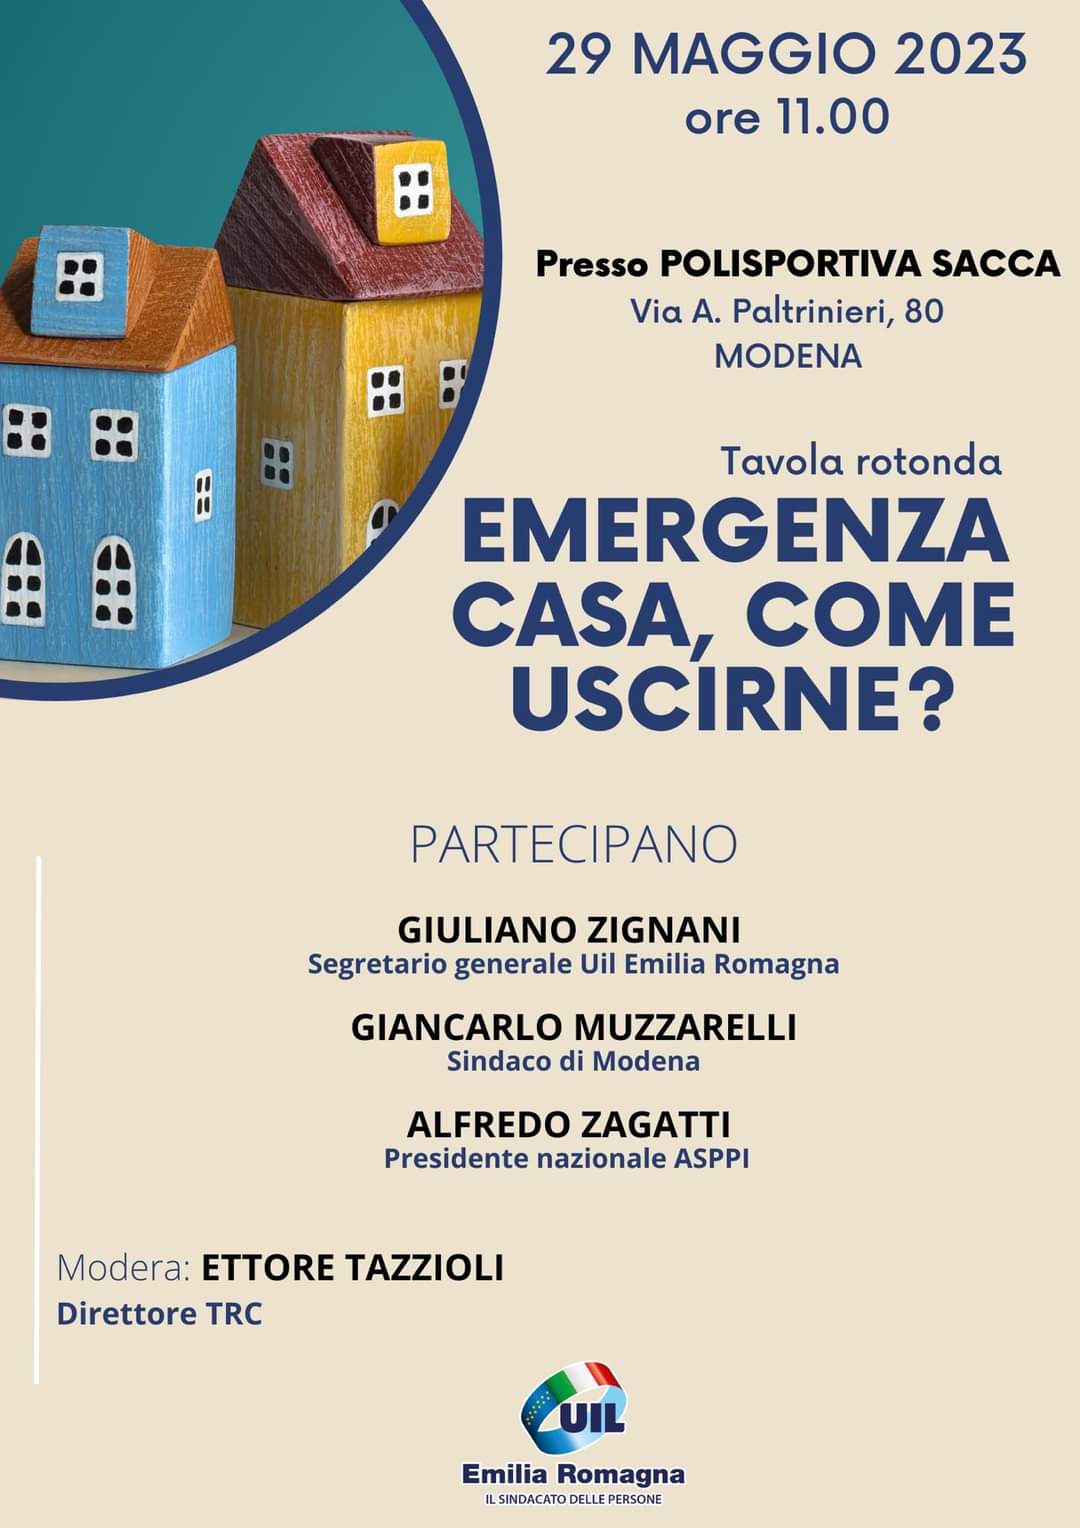 Modena 29 maggio 2023 ore 11.00 – Convegno Uil con la partecipazione del Presidente Nazionale ASPPI Alfredo Zagatti – Emergenza casa, come uscirne?